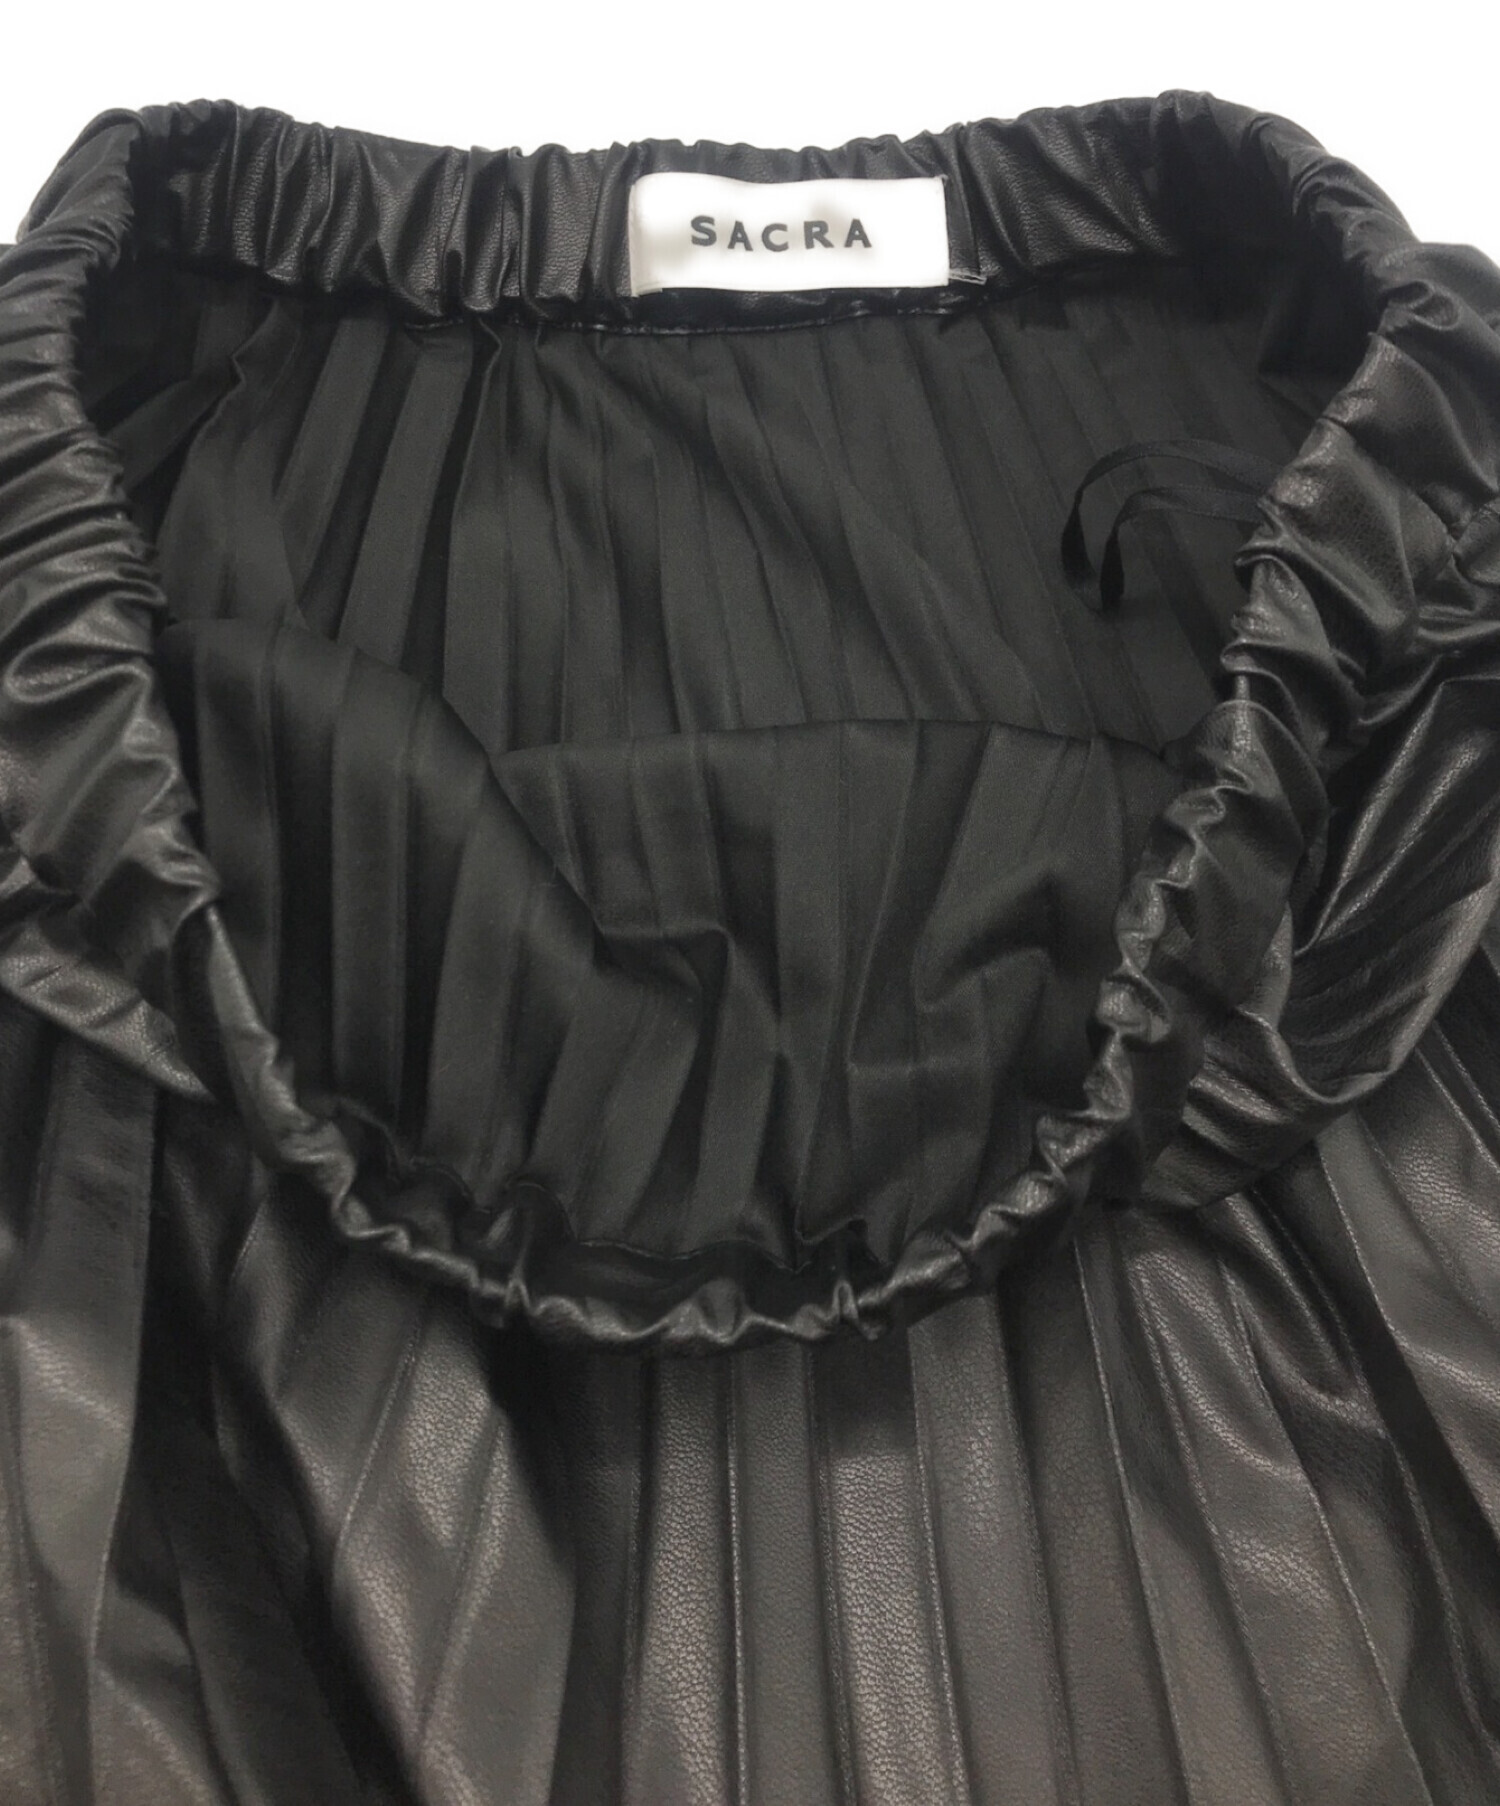 SACRA (サクラ) シンセティック レザープリーツスカート ブラック サイズ:38